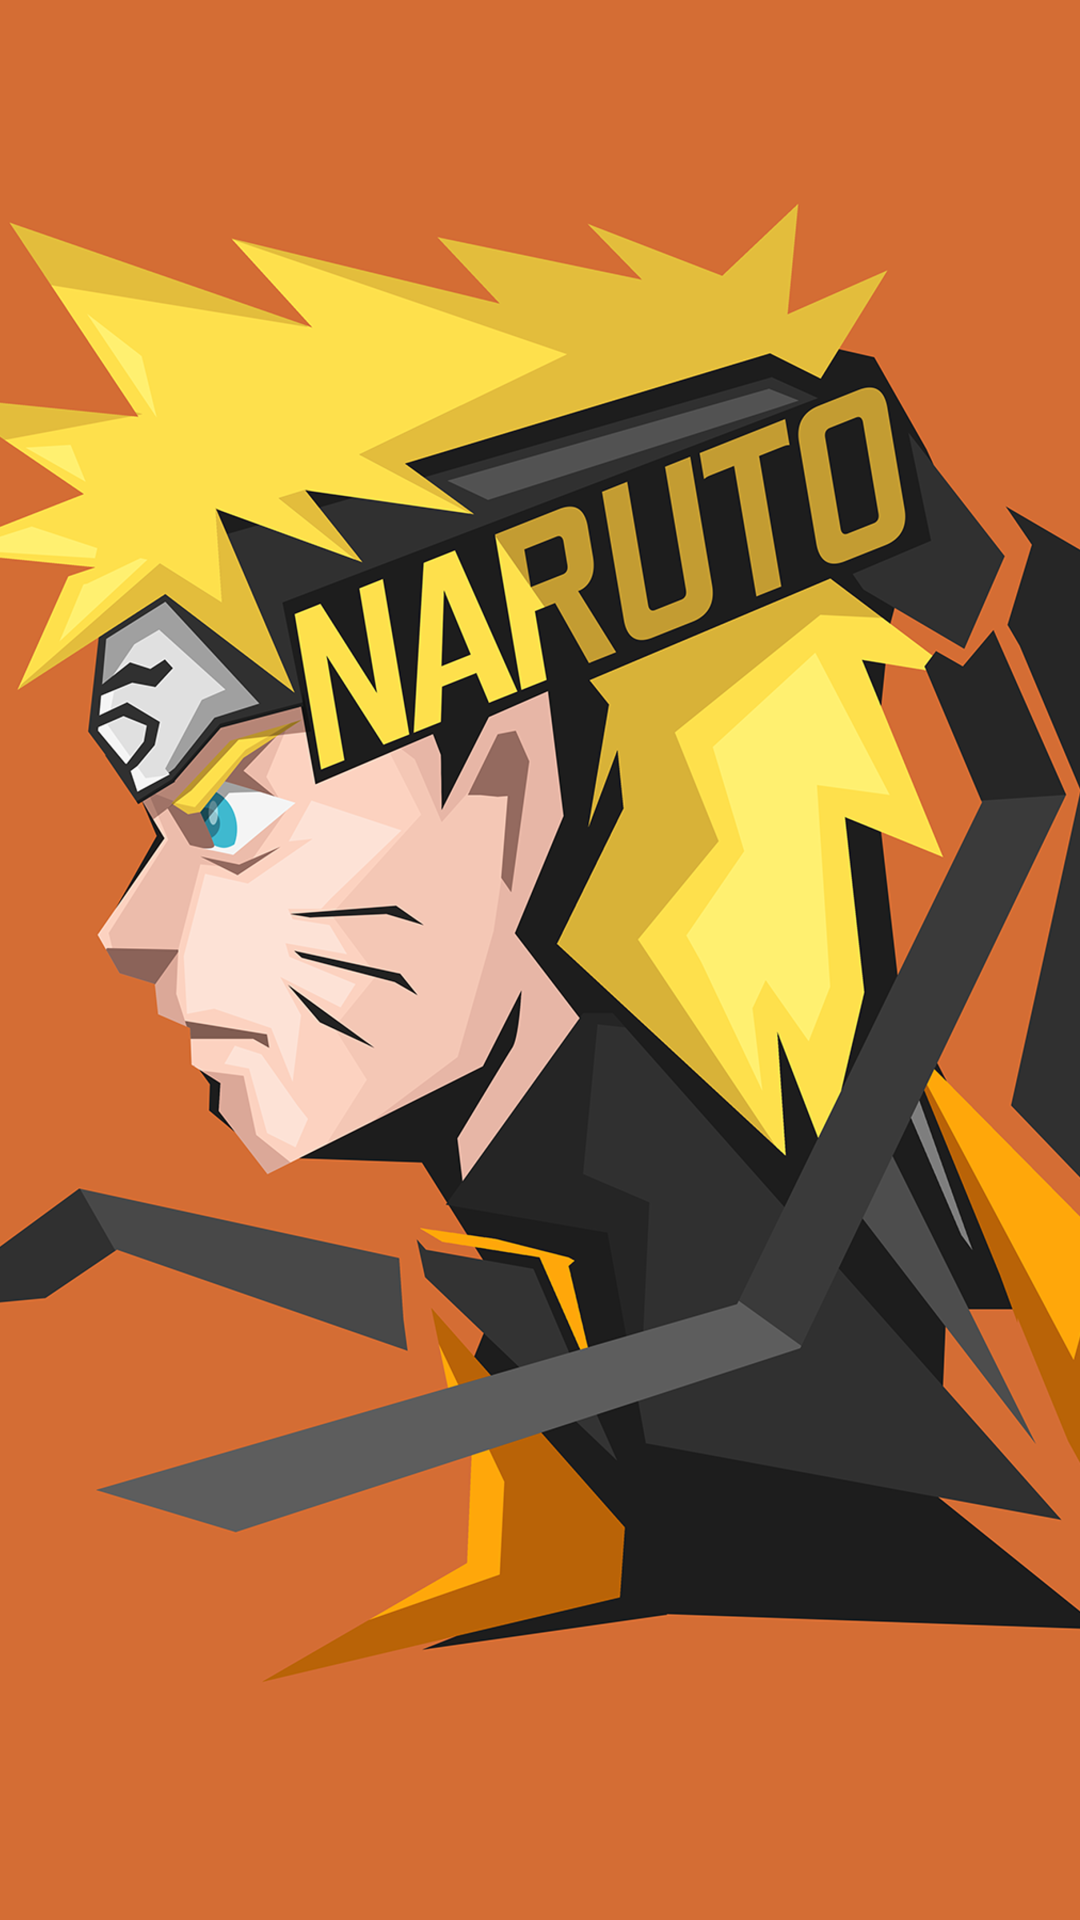 Naruto Uzumaki là một trong những nhân vật nổi tiếng nhất trong thế giới anime. Vậy tại sao bạn không thử để mang nhân vật này lên bộ sưu tập hình nền điện thoại của mình? Khám phá ngay hình nền Naruto Uzumaki tuyệt đẹp để trang trí cho điện thoại của bạn.